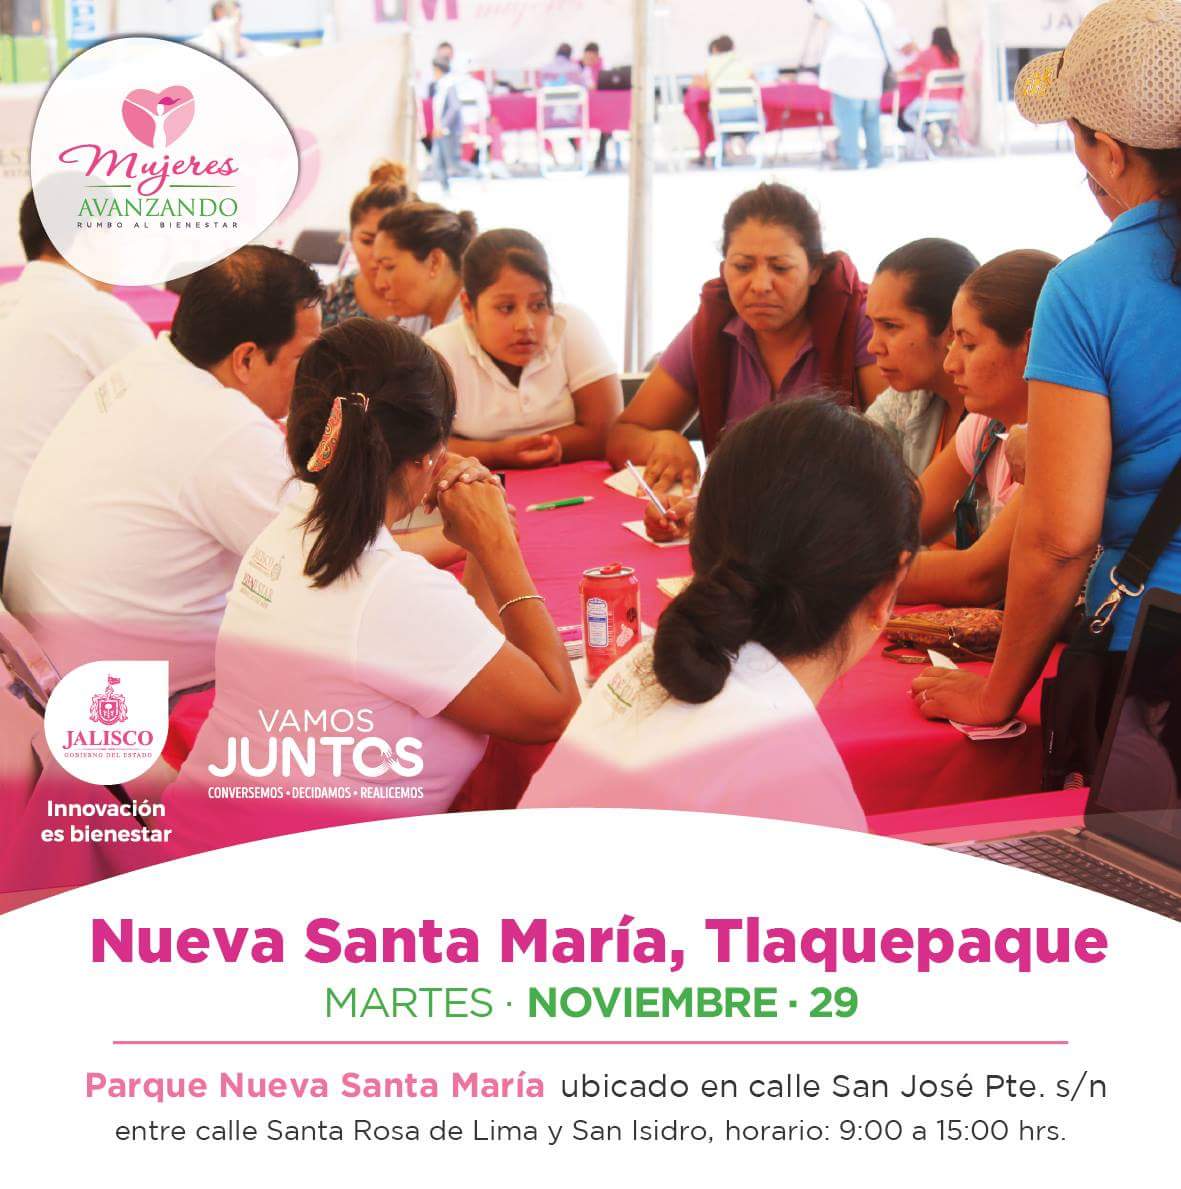 Buenos días, invito a las mujeres de #Jalisco a formar parte de la Caravana de Servicios #MujeresAvanzando que hoy estará en Tlaquepaque.